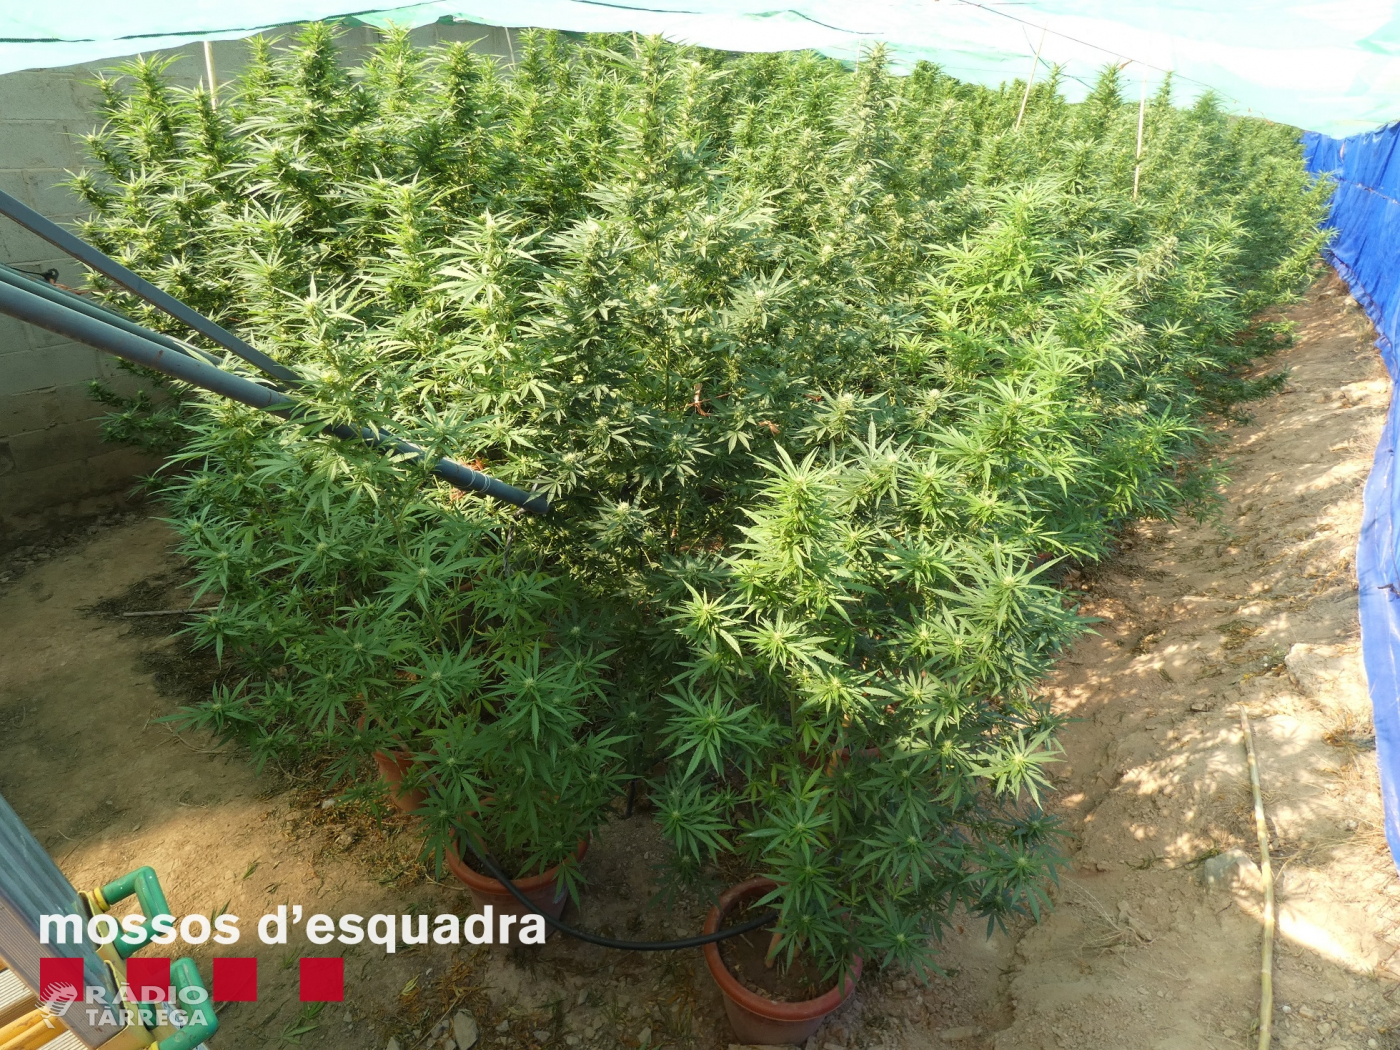 Els Mossos d'Esquadra detenen un home a l'Urgell per cultivar marihuana